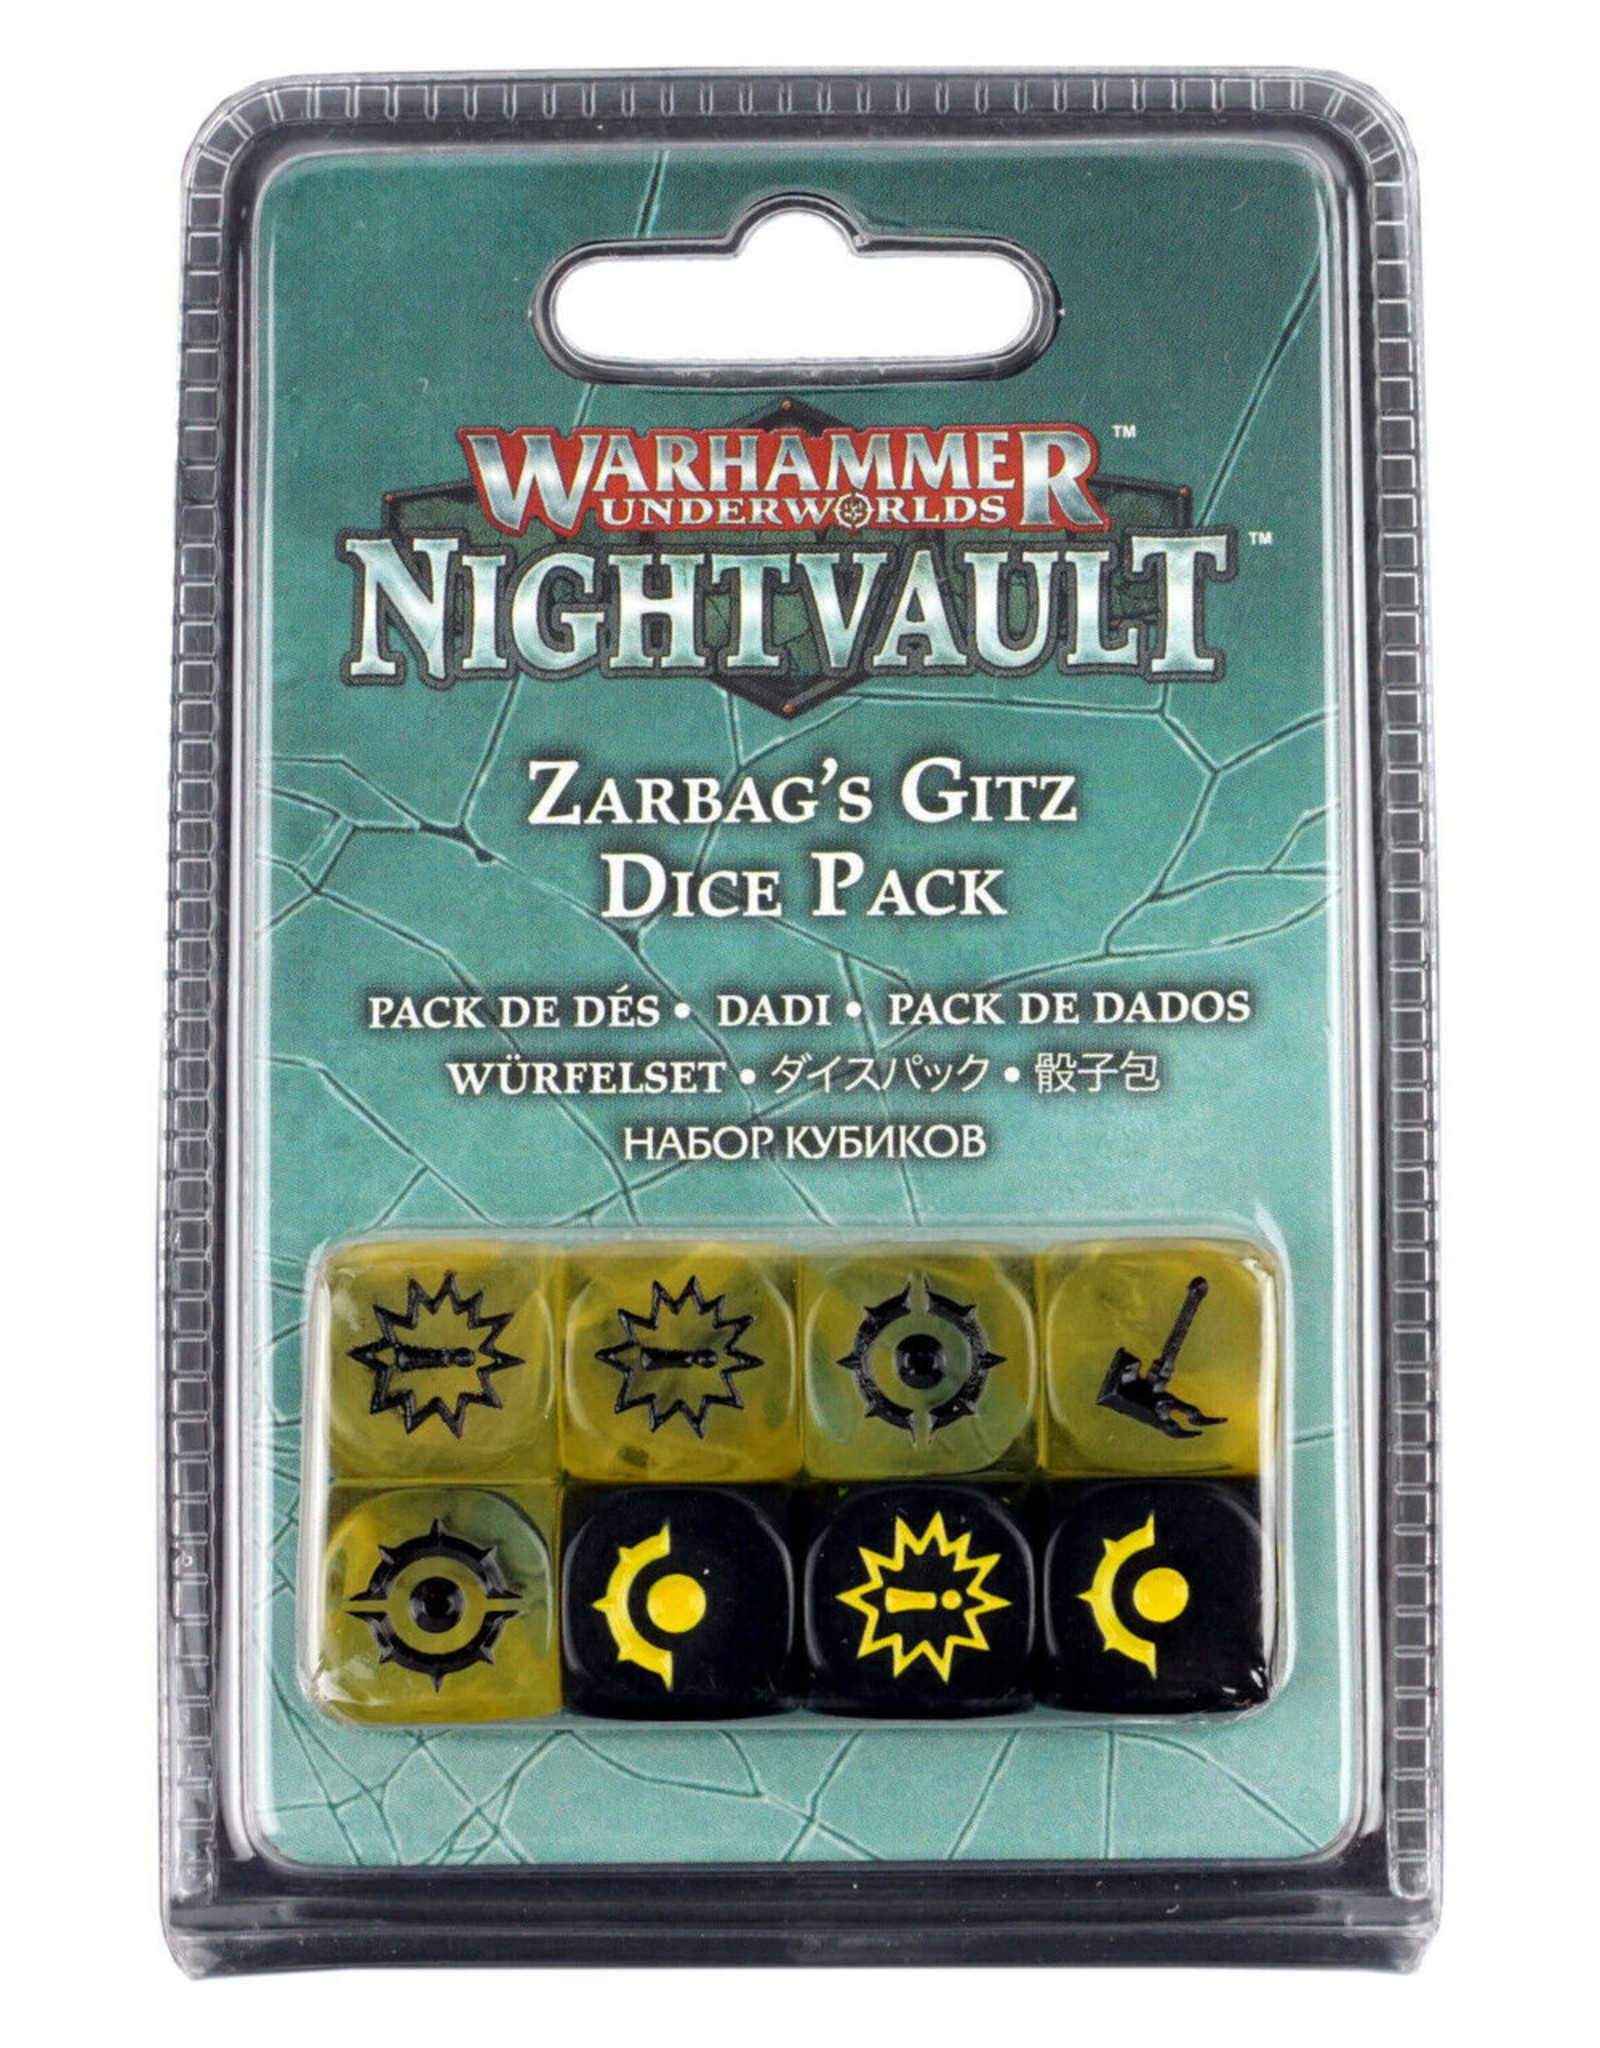 Games Workshop Warhammer Underworlds Nightvault: Zarbag’s Gitz Dice Pack